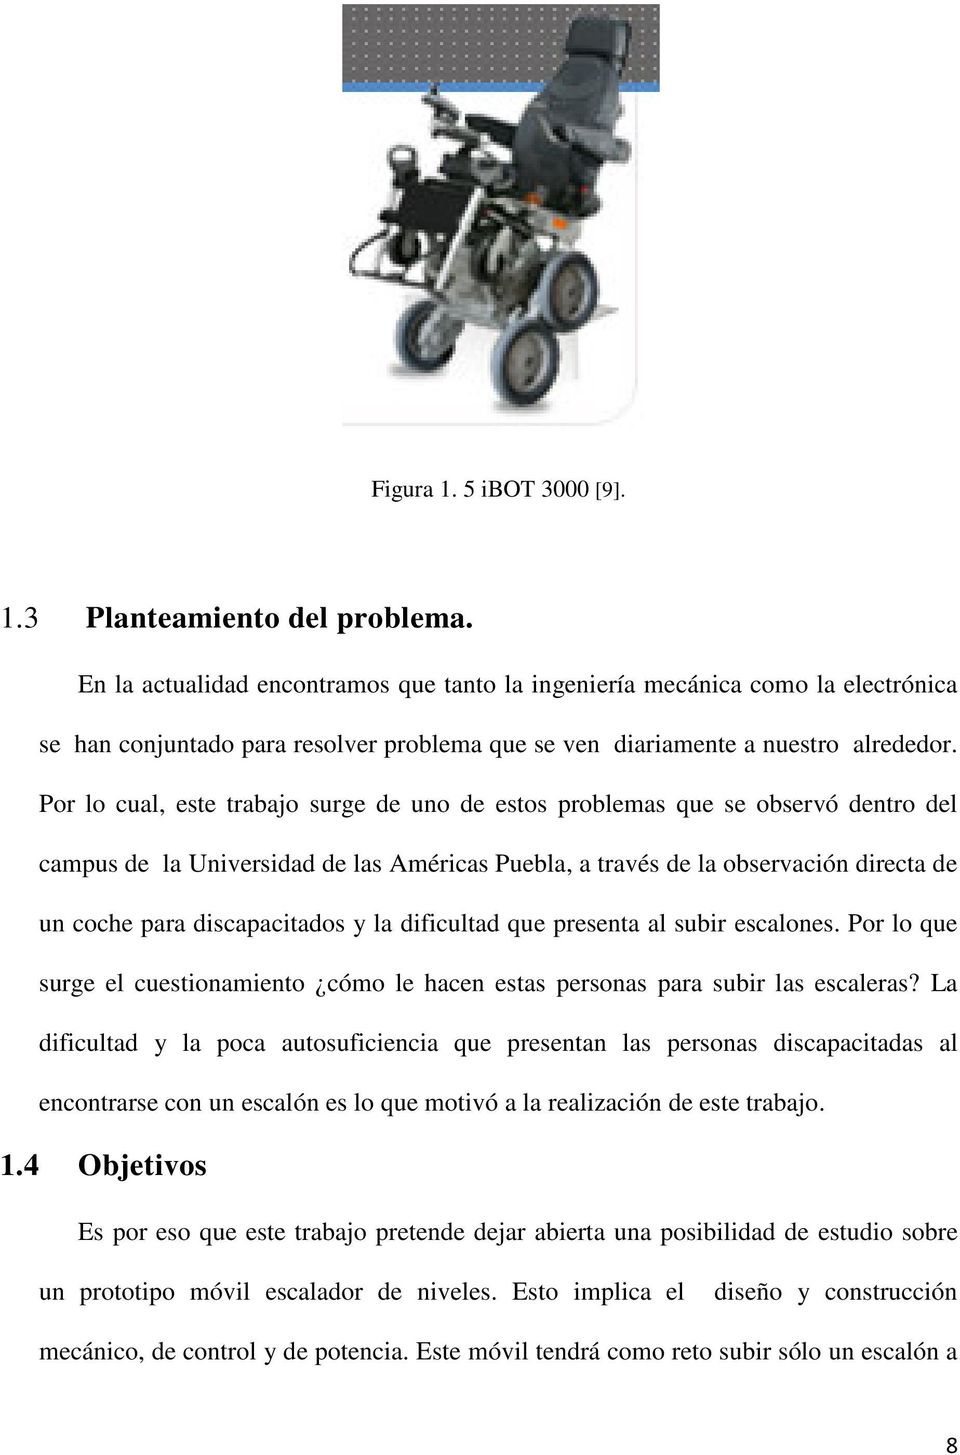 Por lo cual, este trabajo surge de uno de estos problemas que se observó dentro del campus de la Universidad de las Américas Puebla, a través de la observación directa de un coche para discapacitados